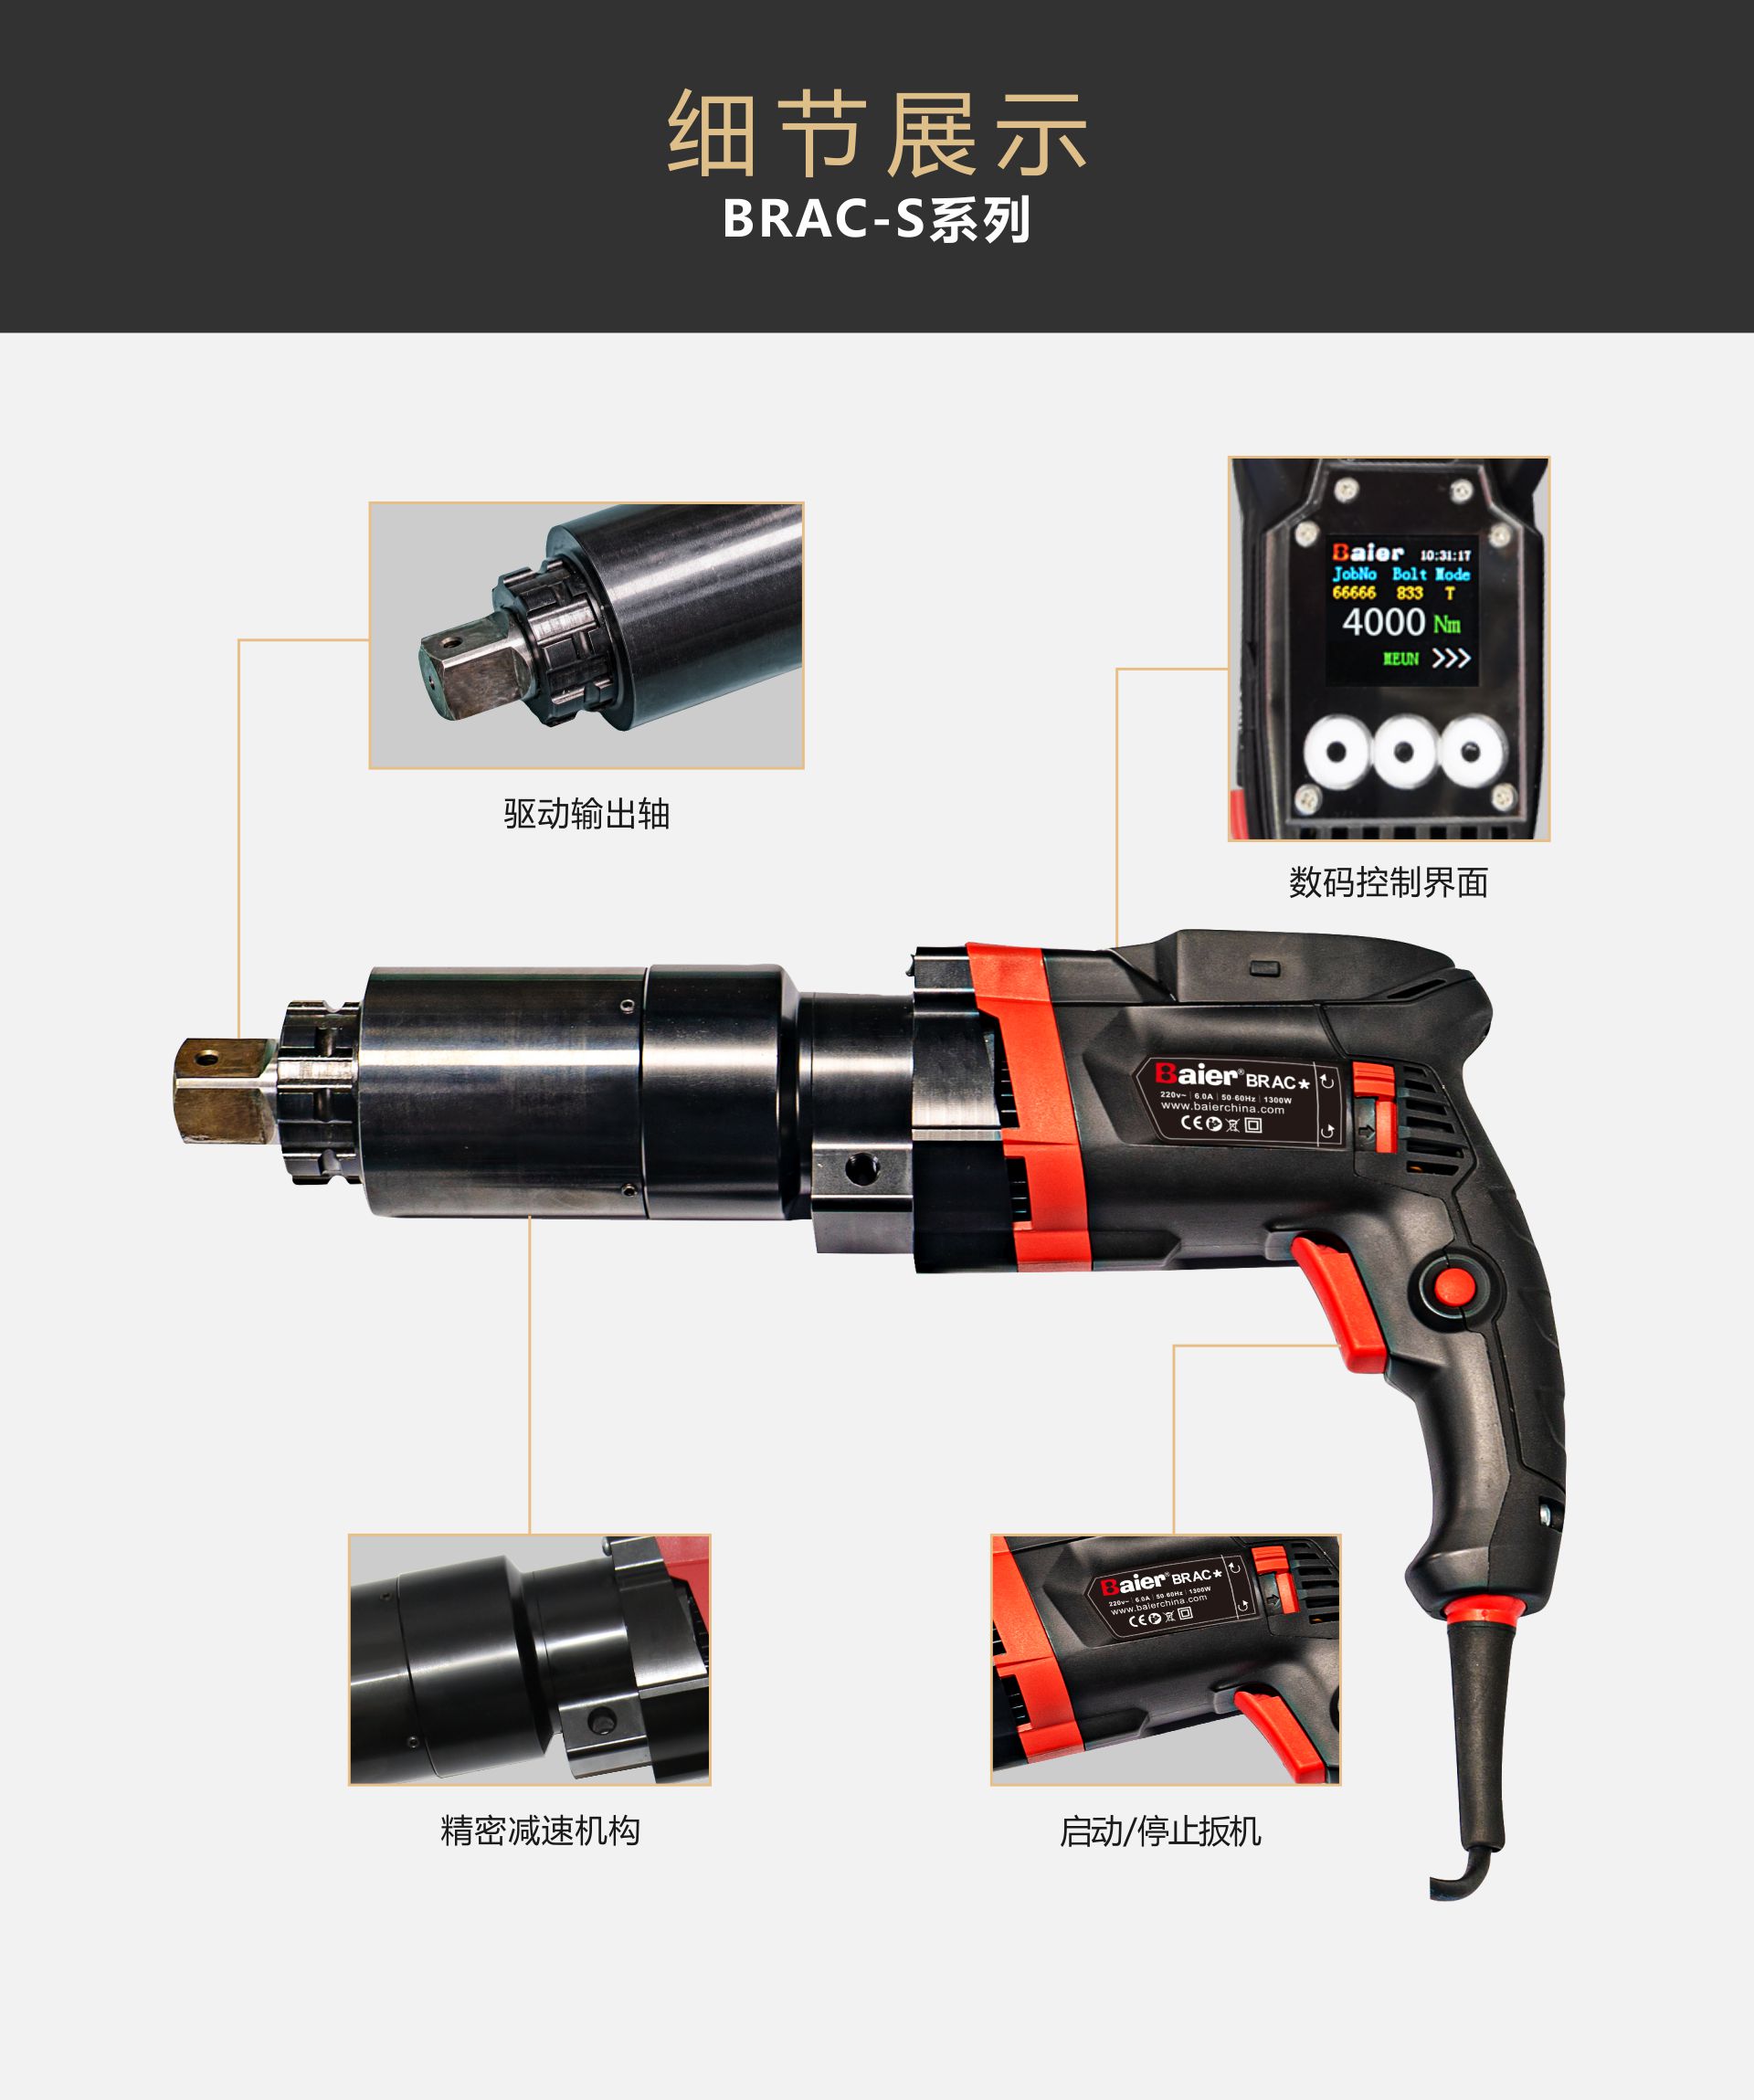 BRAC-S系列--数控电动扭矩扳手